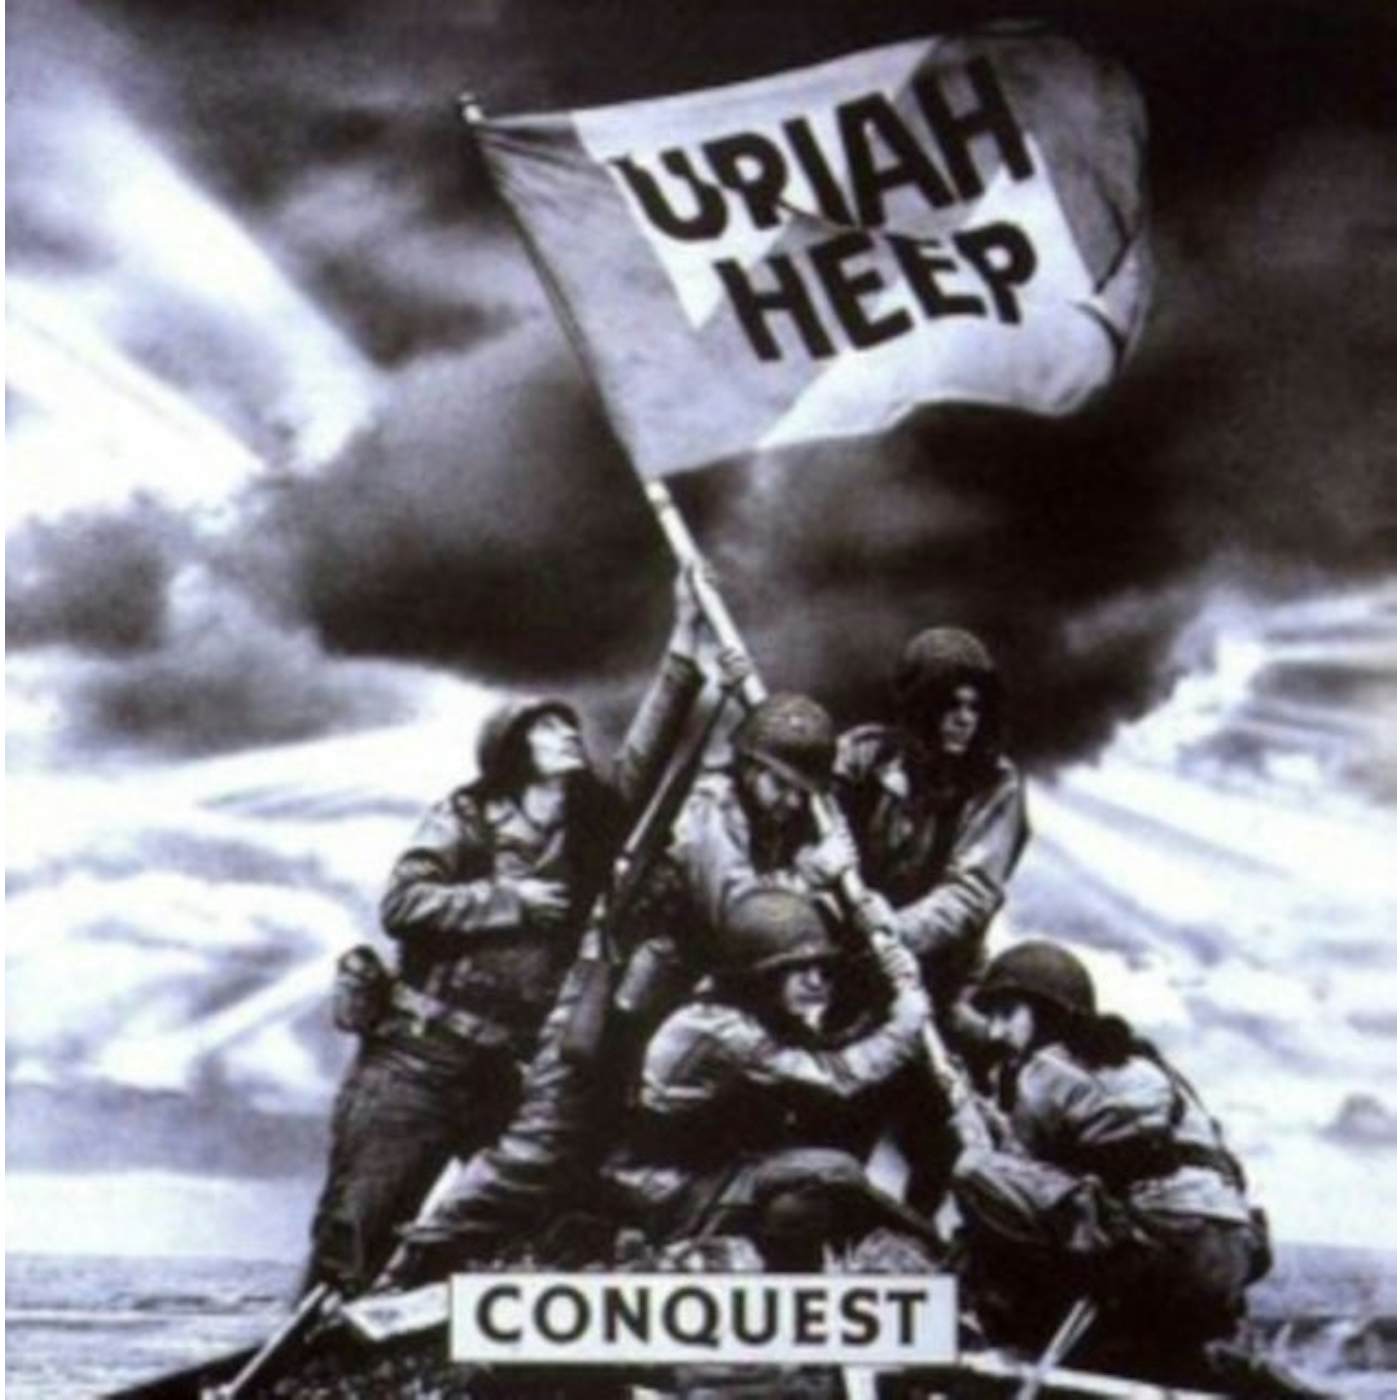 Uriah Heep LP Vinyl Record - Conquest